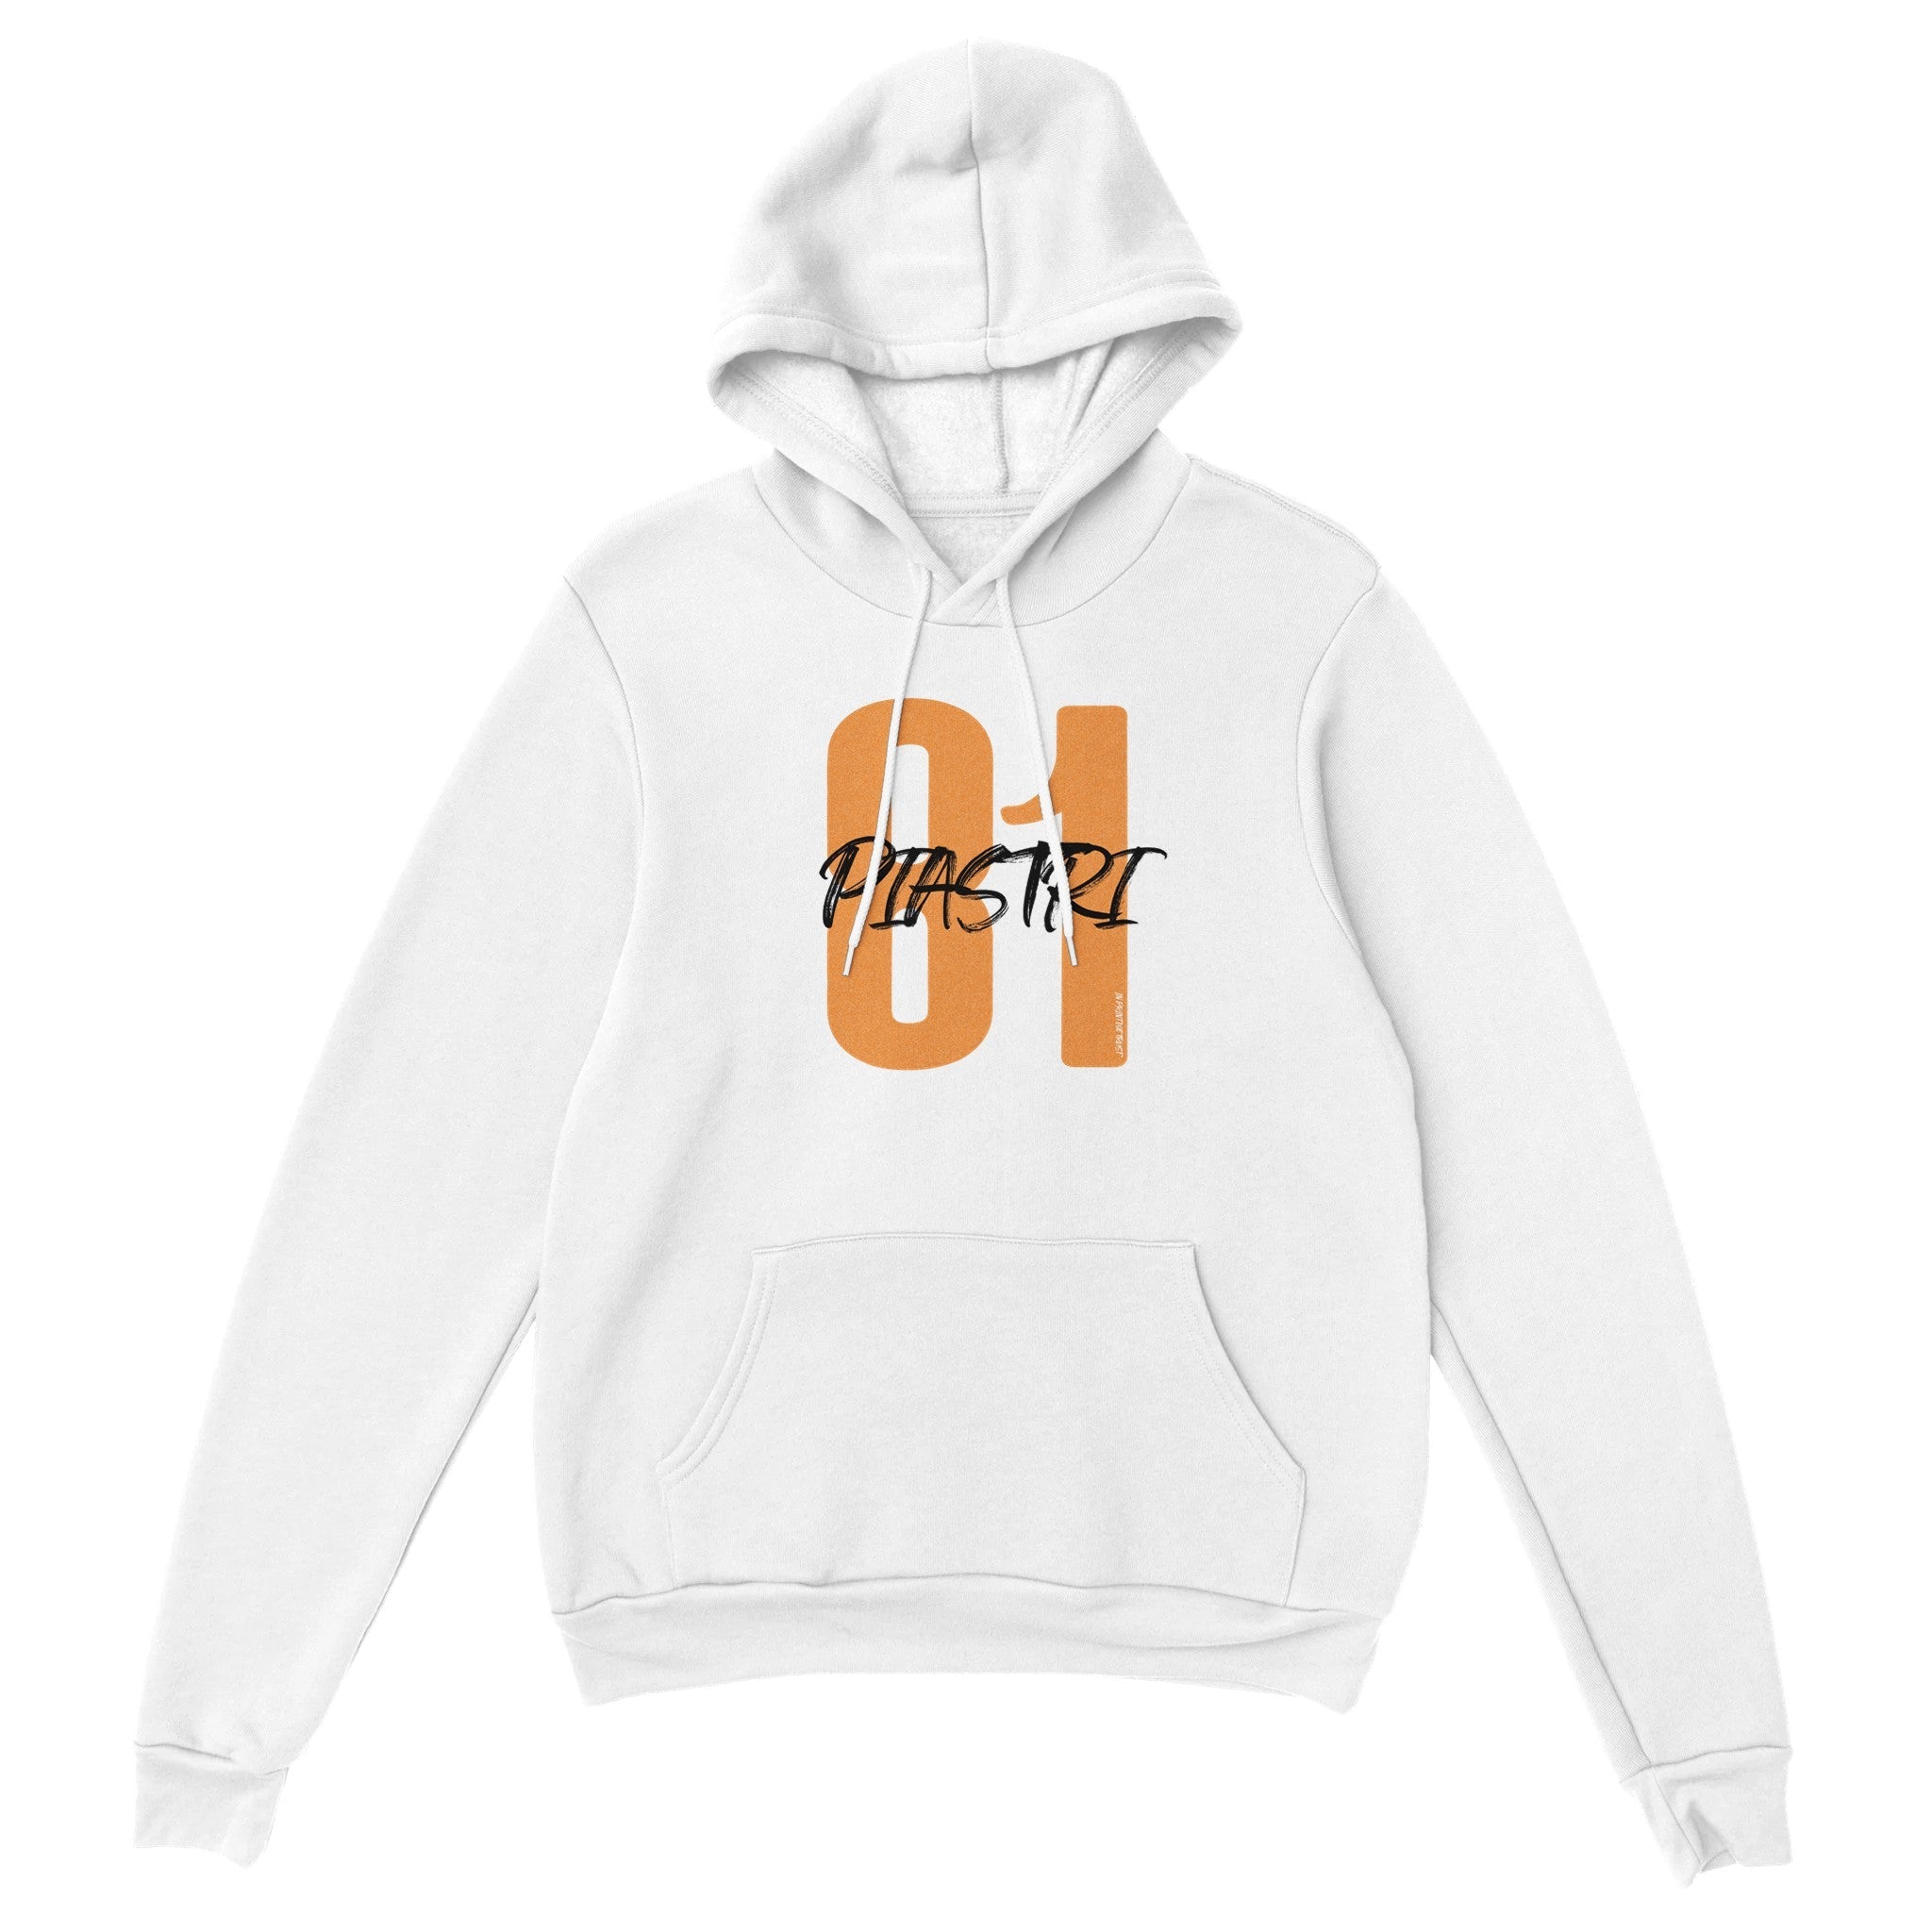 'Piastri 81' hoodie - In Print We Trust